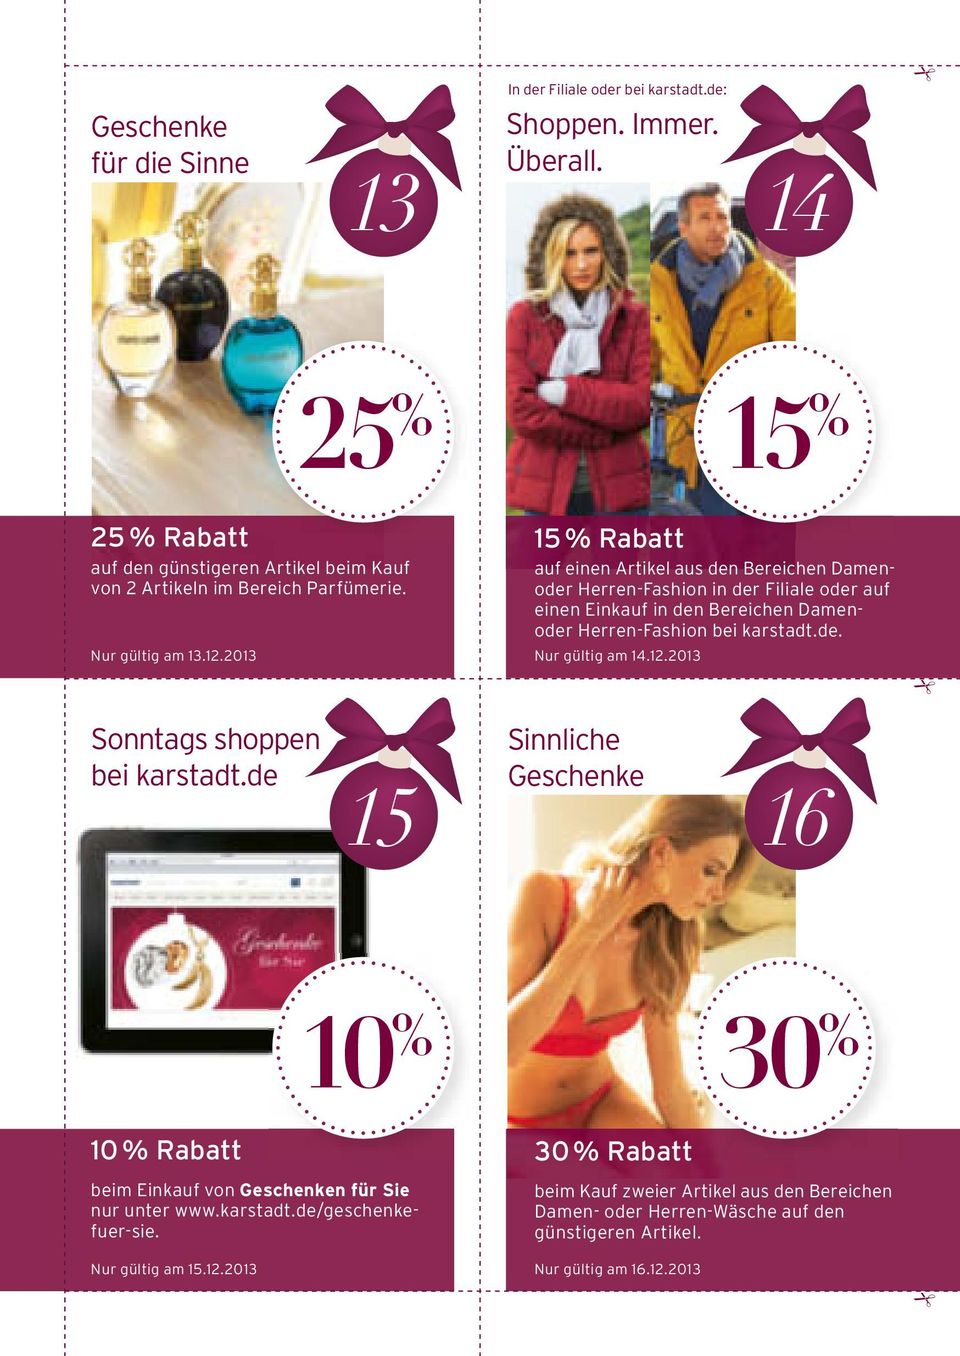 2013 15 % Rabatt auf einen Artikel aus den Bereichen Damenoder Herren-Fashion in der Filiale oder auf einen Einkauf in den Bereichen Damenoder Herren-Fashion bei karstadt.de. Nur gültig am 14.